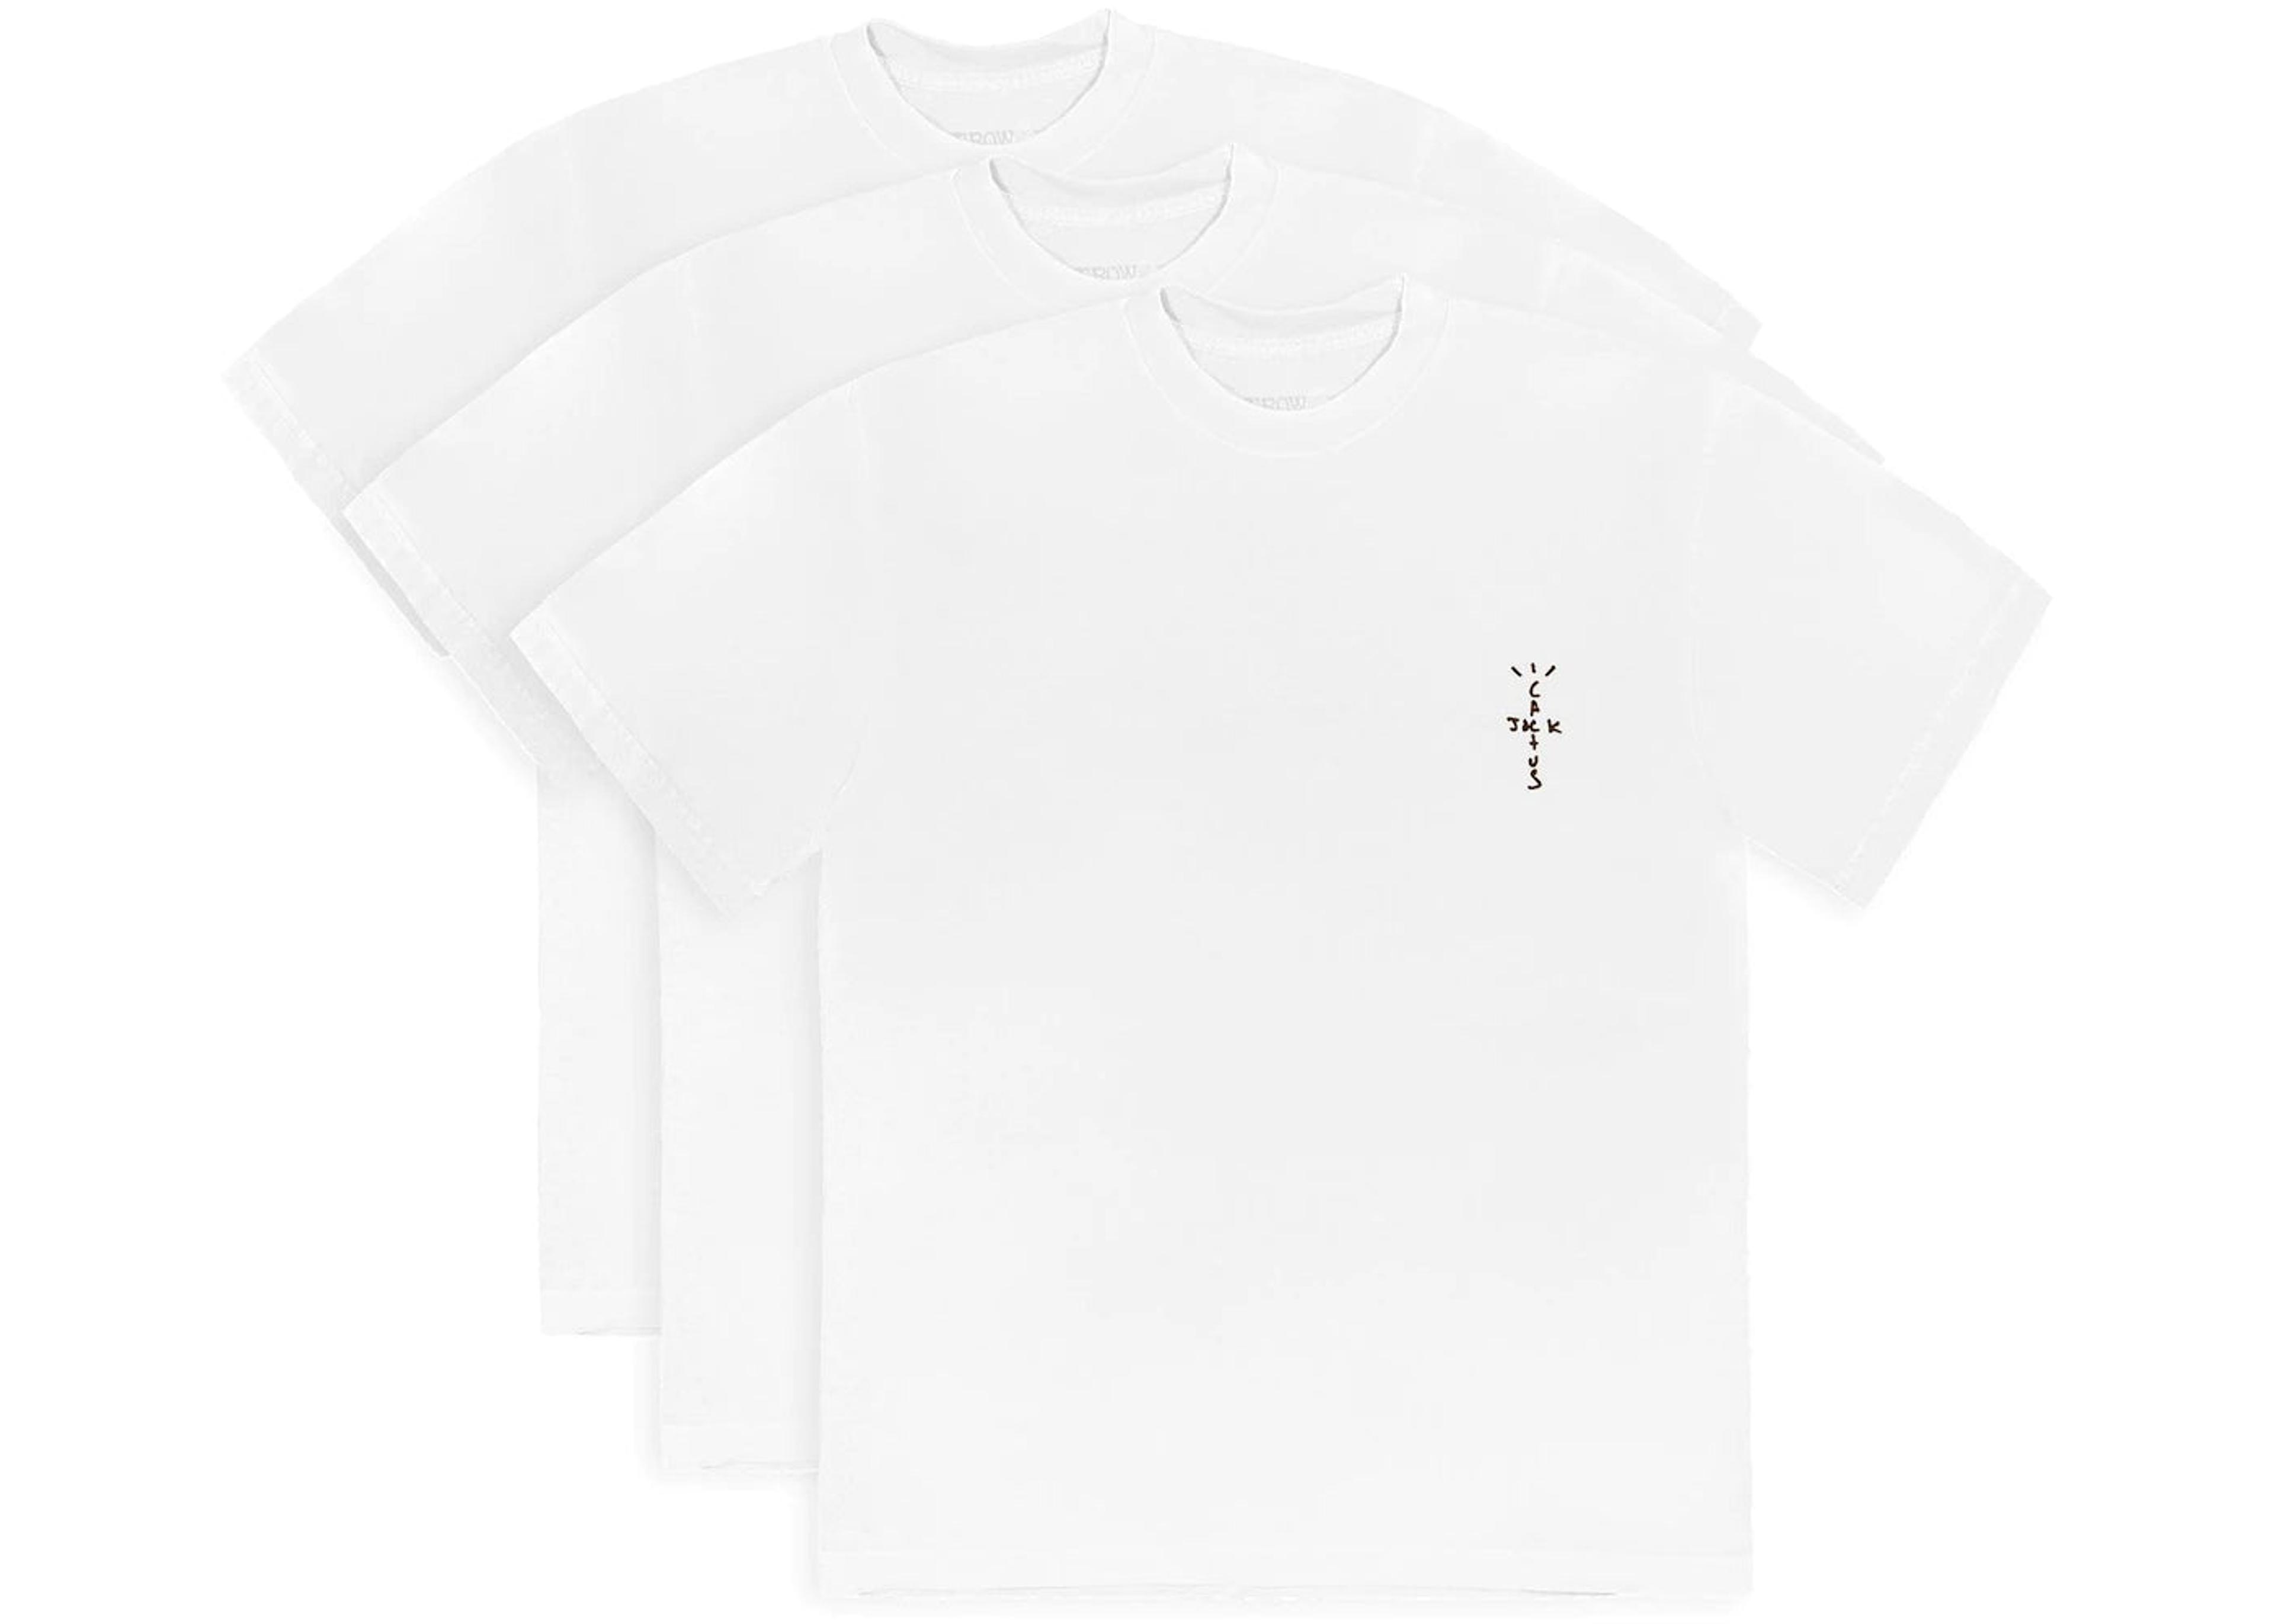 Travis Scott White 'CJ' T-Shirt (3 Pack)